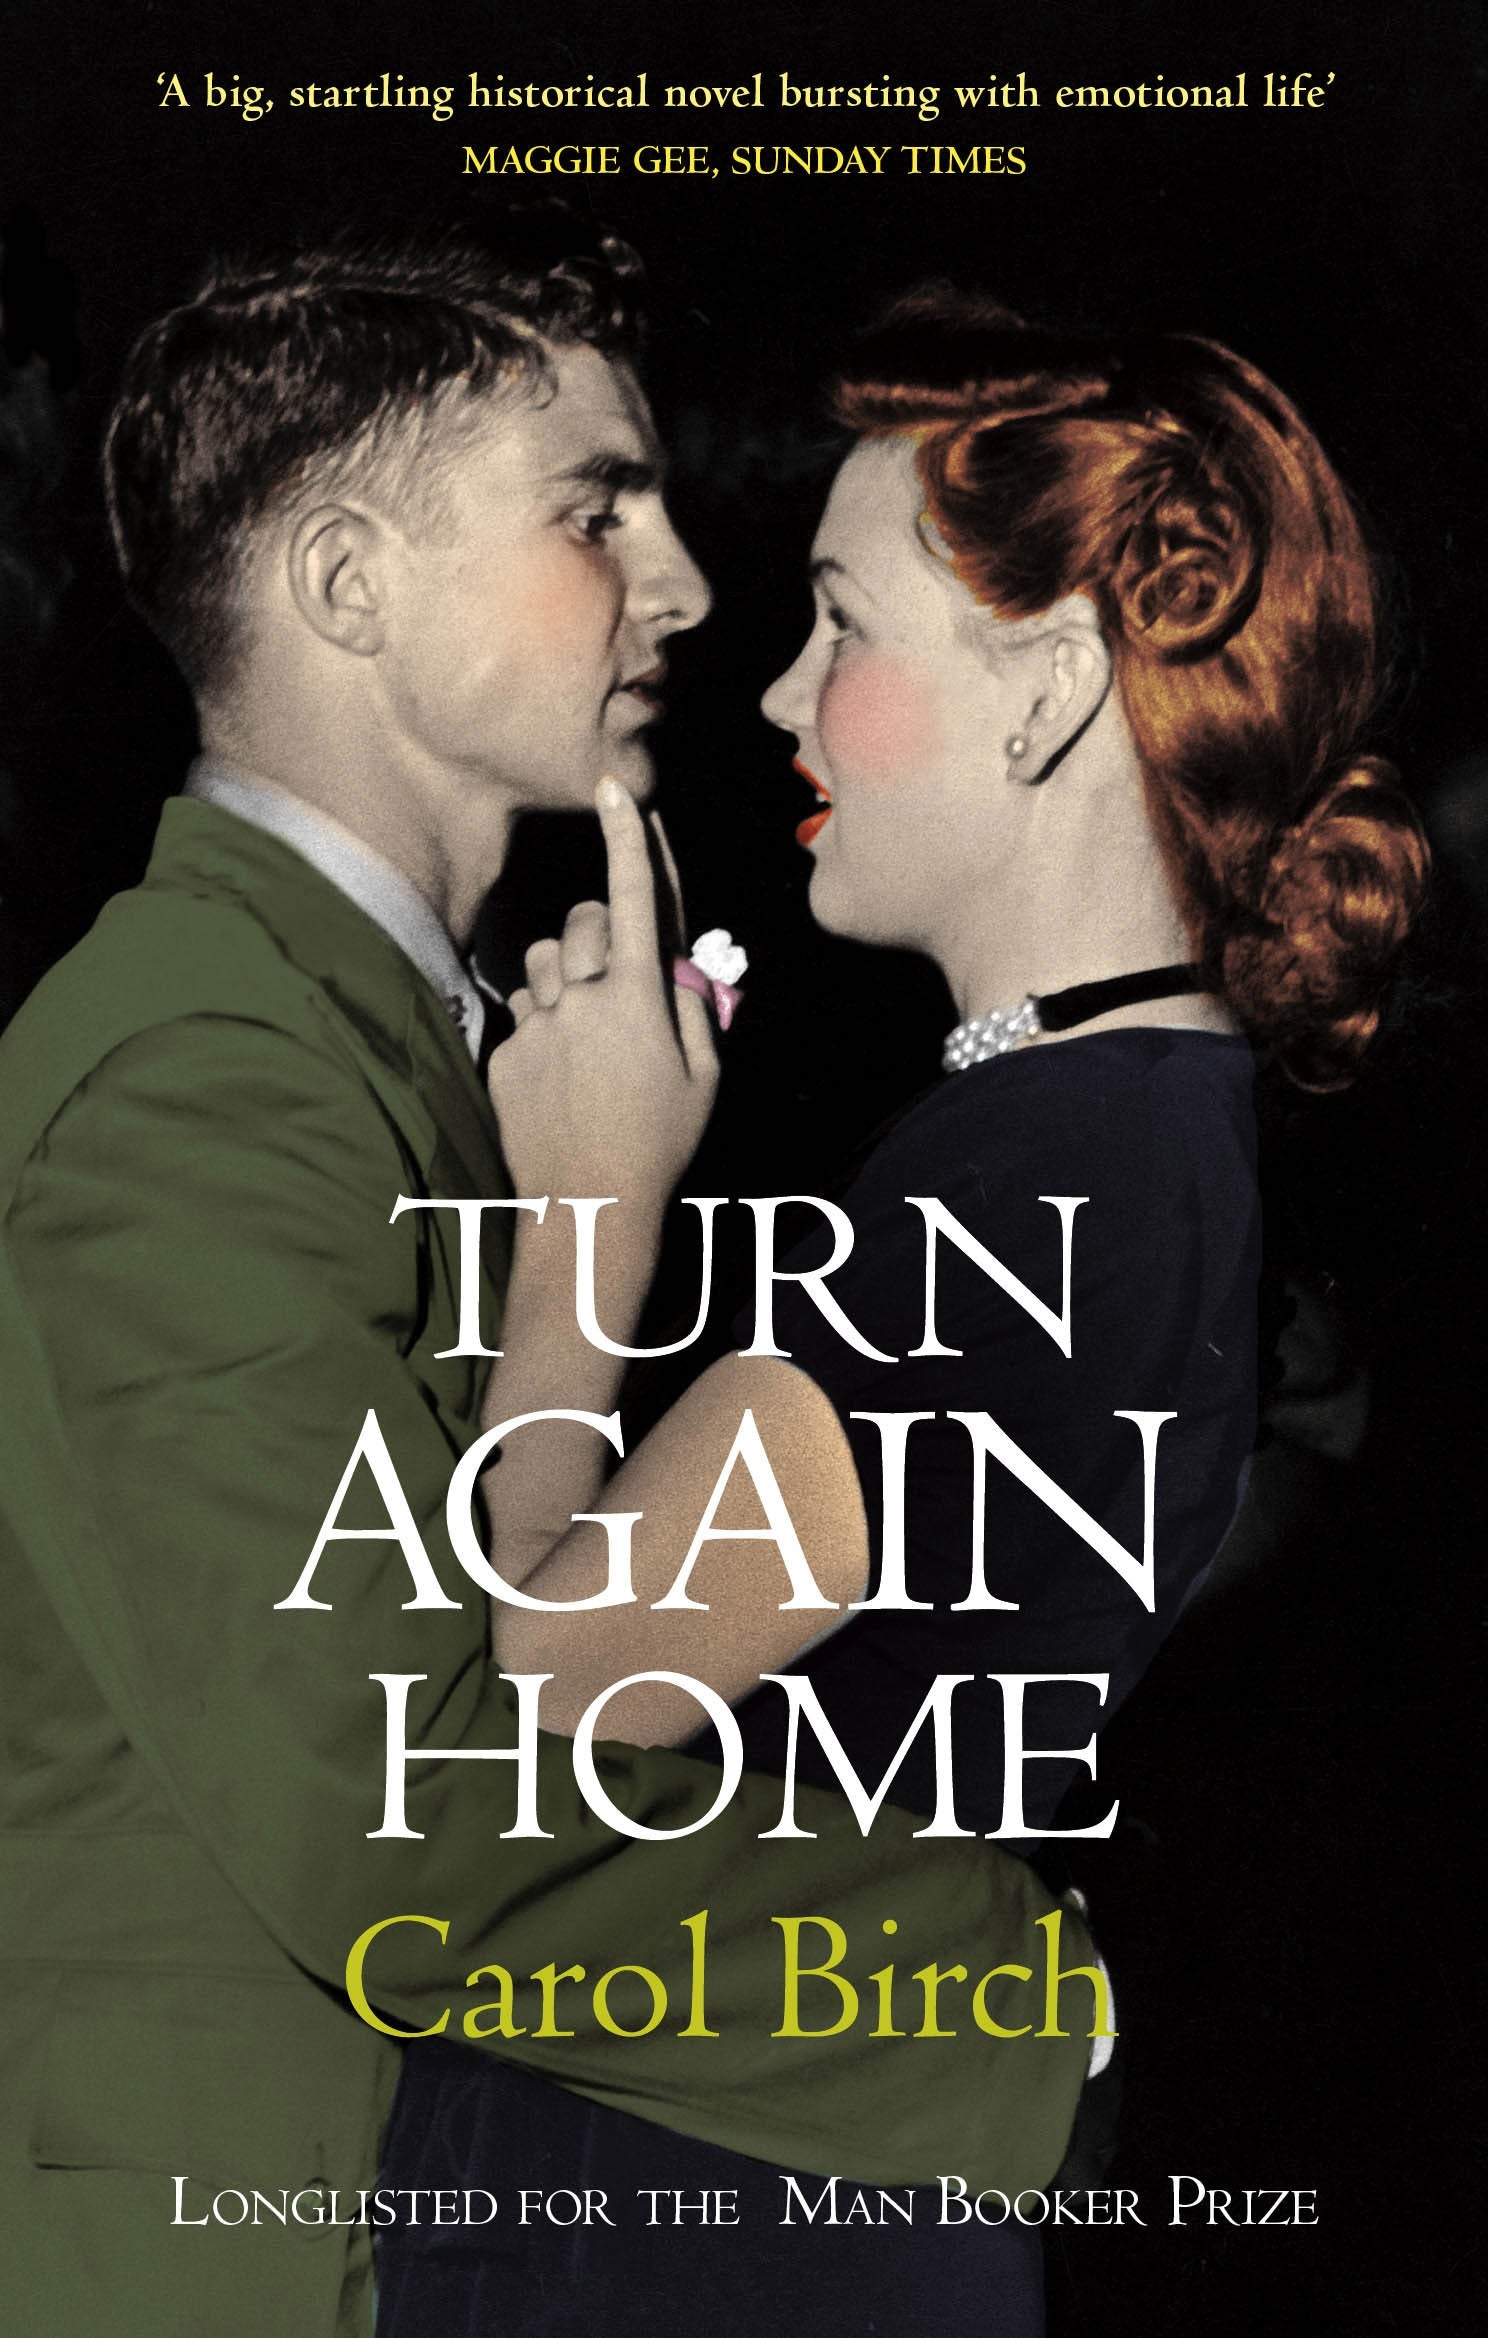 Turn Again Home by Carol Birch